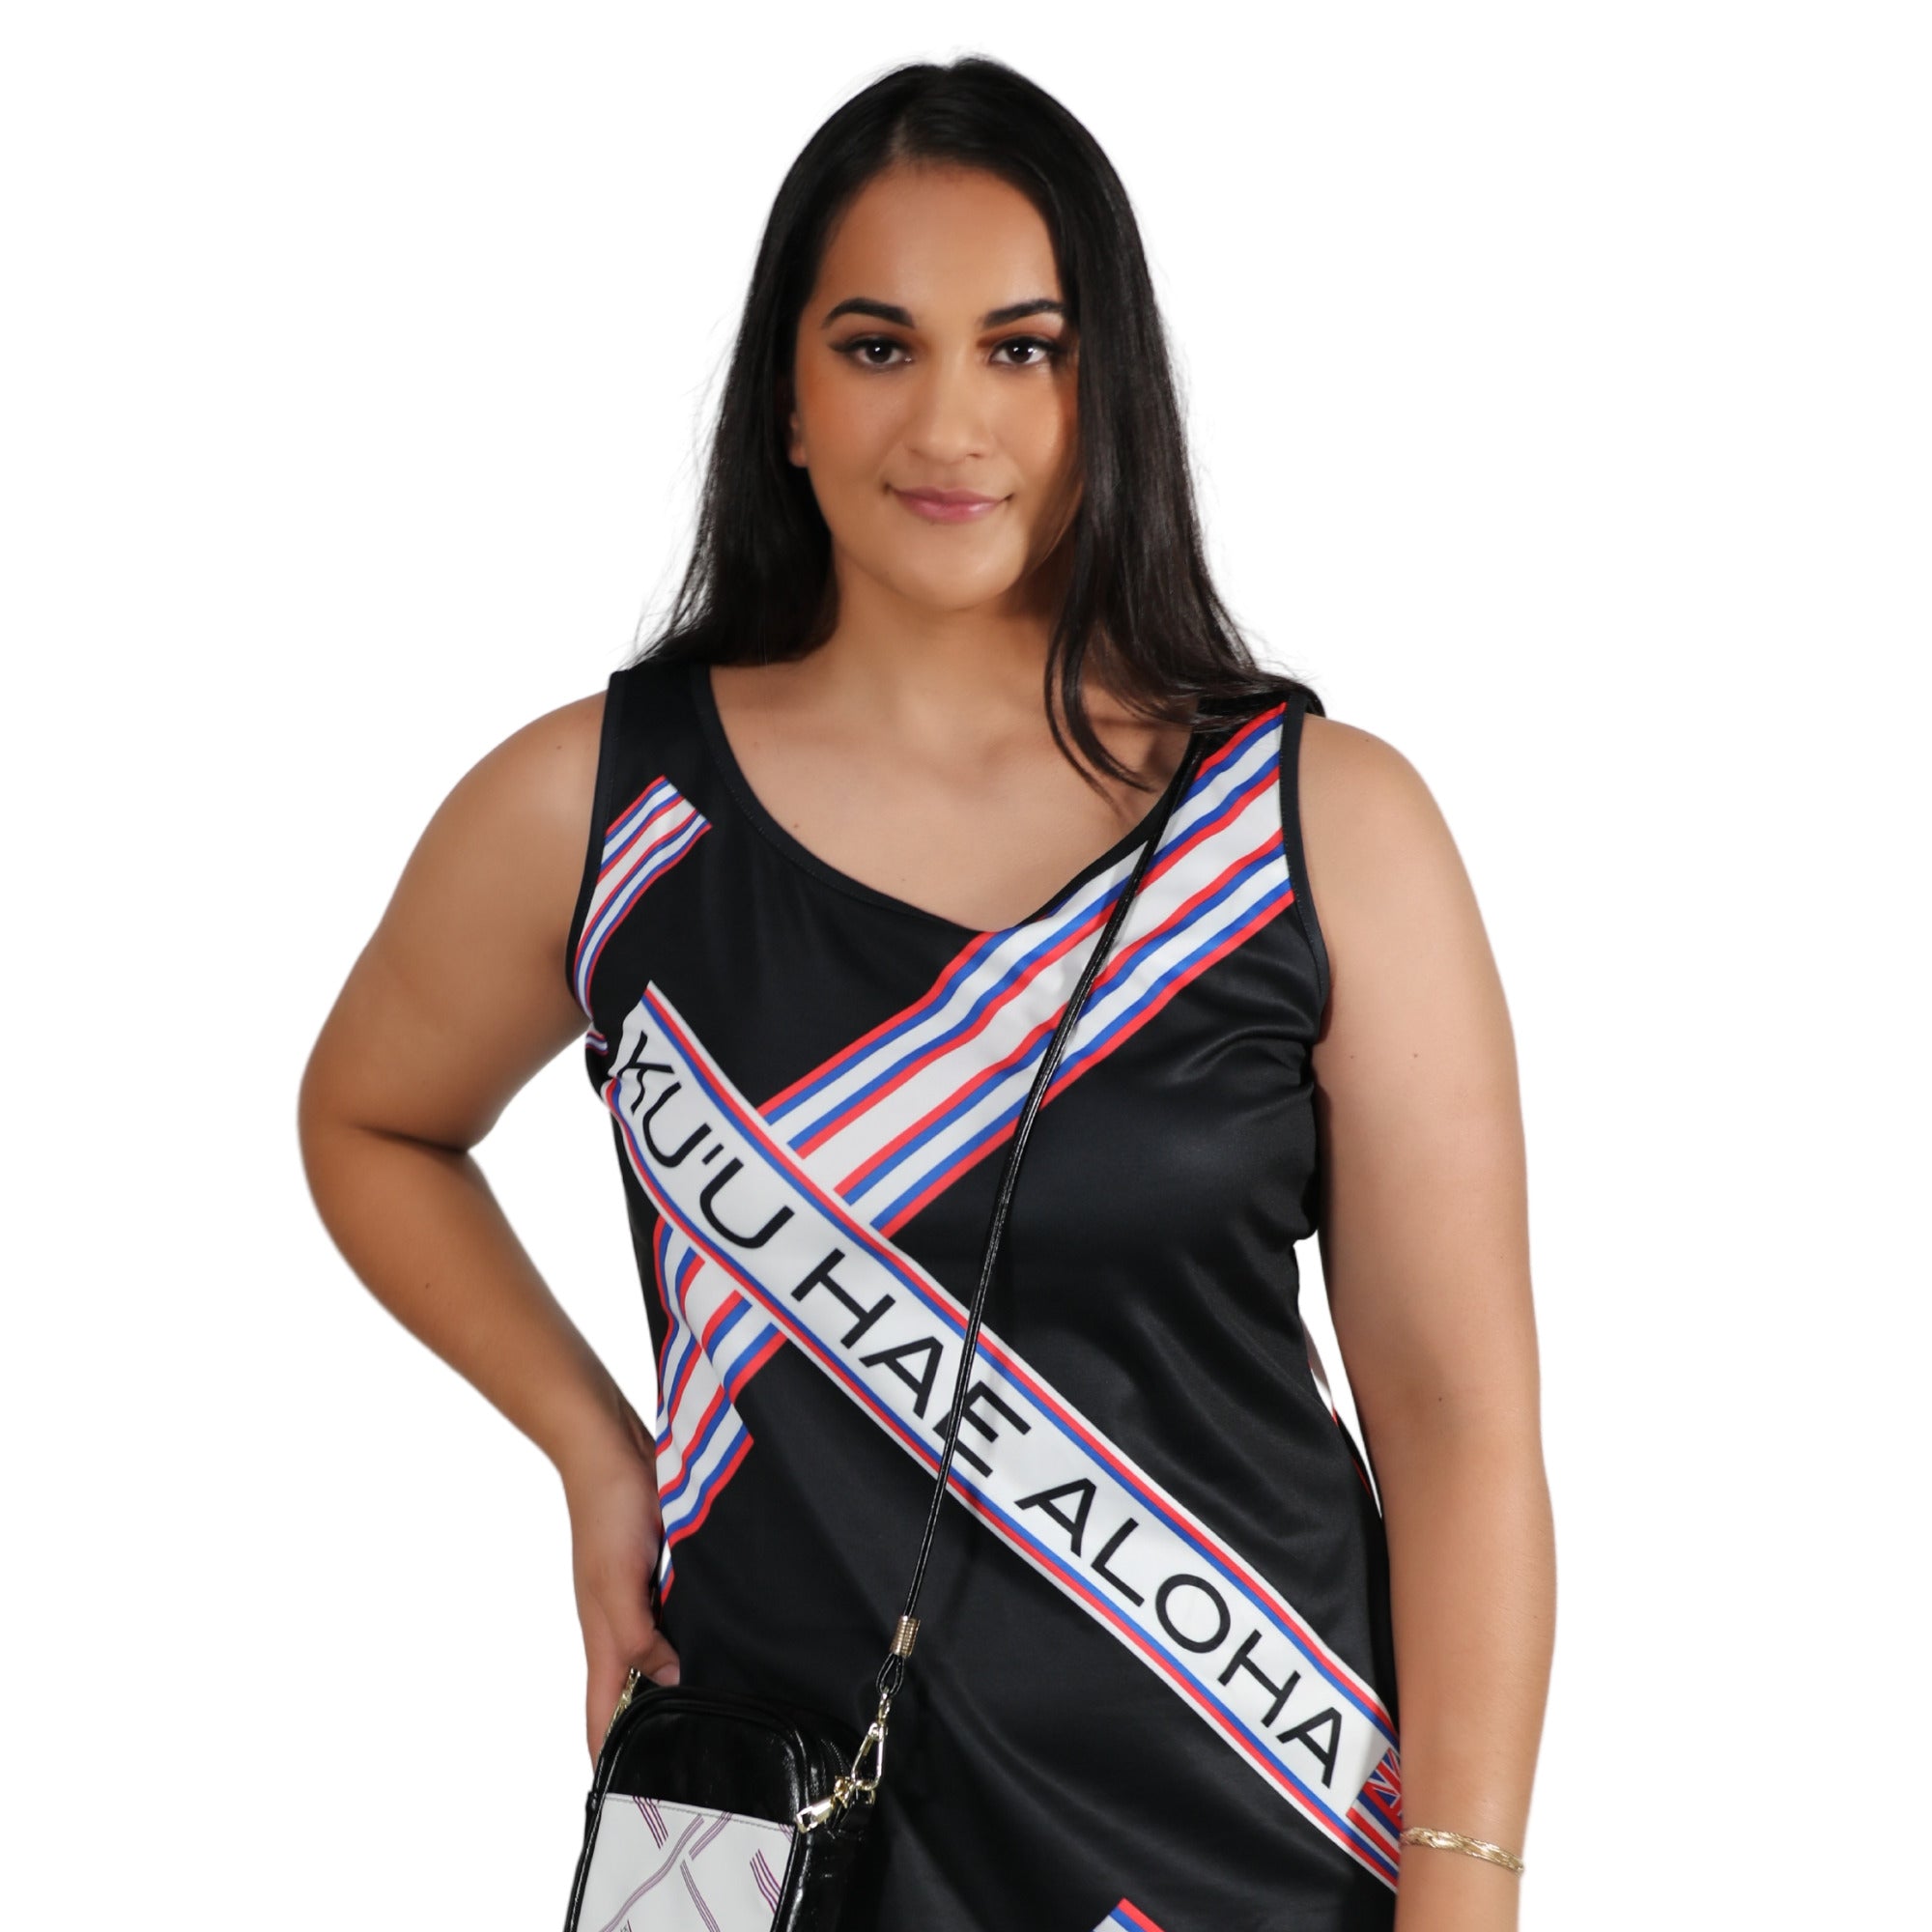 Pop-Up Mākeke - Kini Zamora - Kuʻu Hae Aloha Bodycon Maxi Dress - Close Up